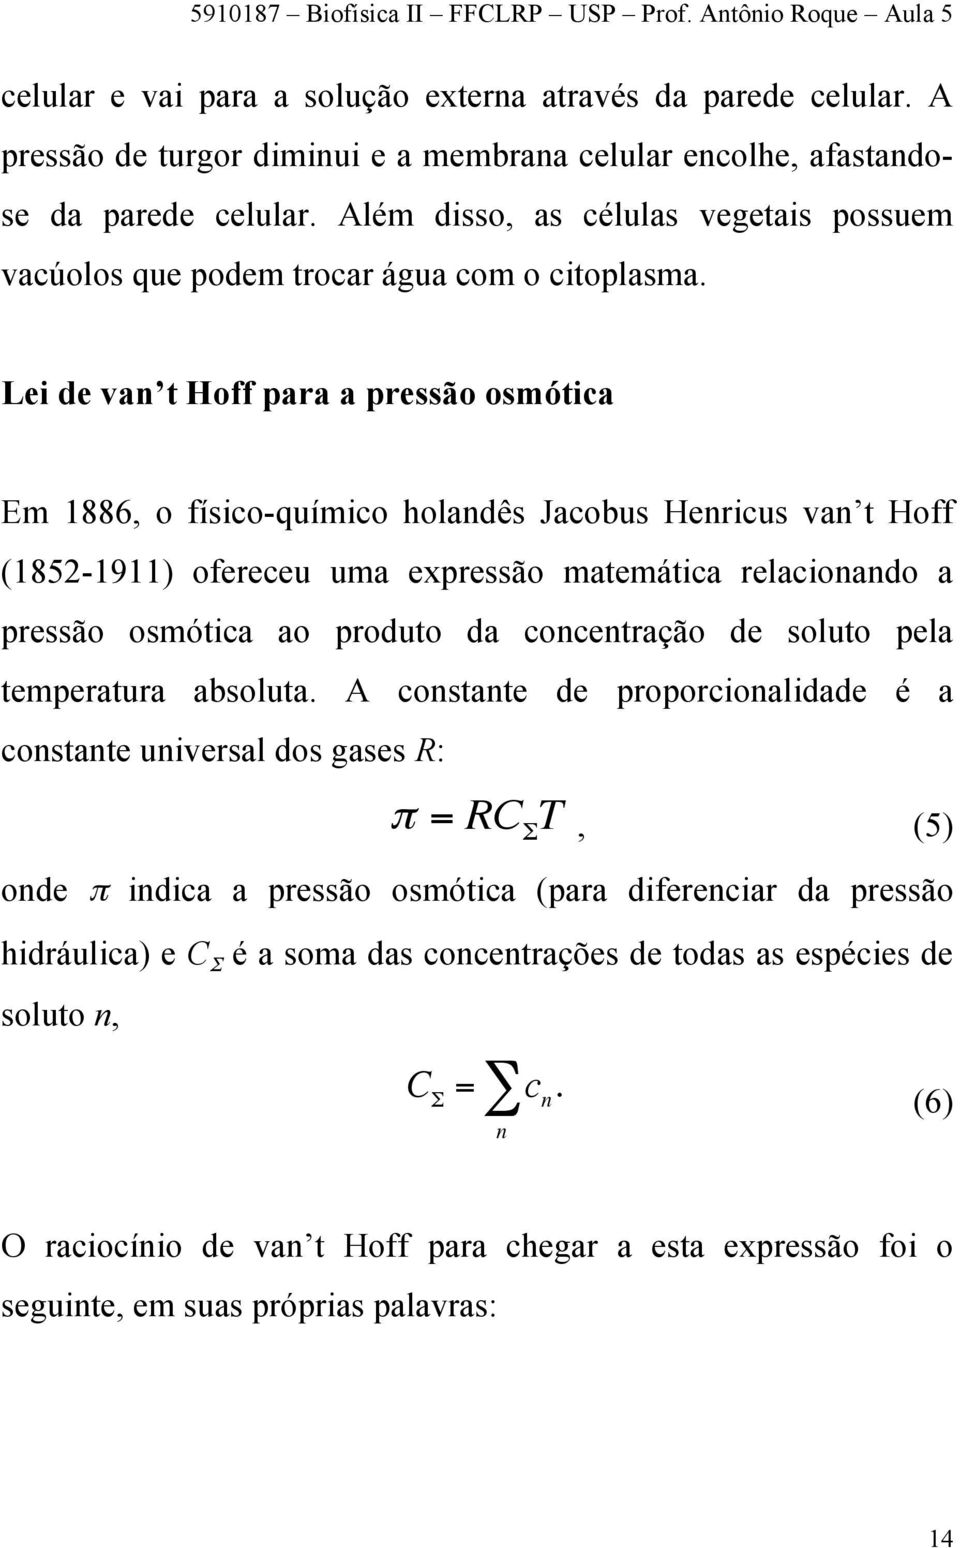 Lei de van t Hoff para a pressão osmótica Em 1886, o físico-químico holandês Jacobus Henricus van t Hoff (1852-1911) ofereceu uma expressão matemática relacionando a pressão osmótica ao produto da